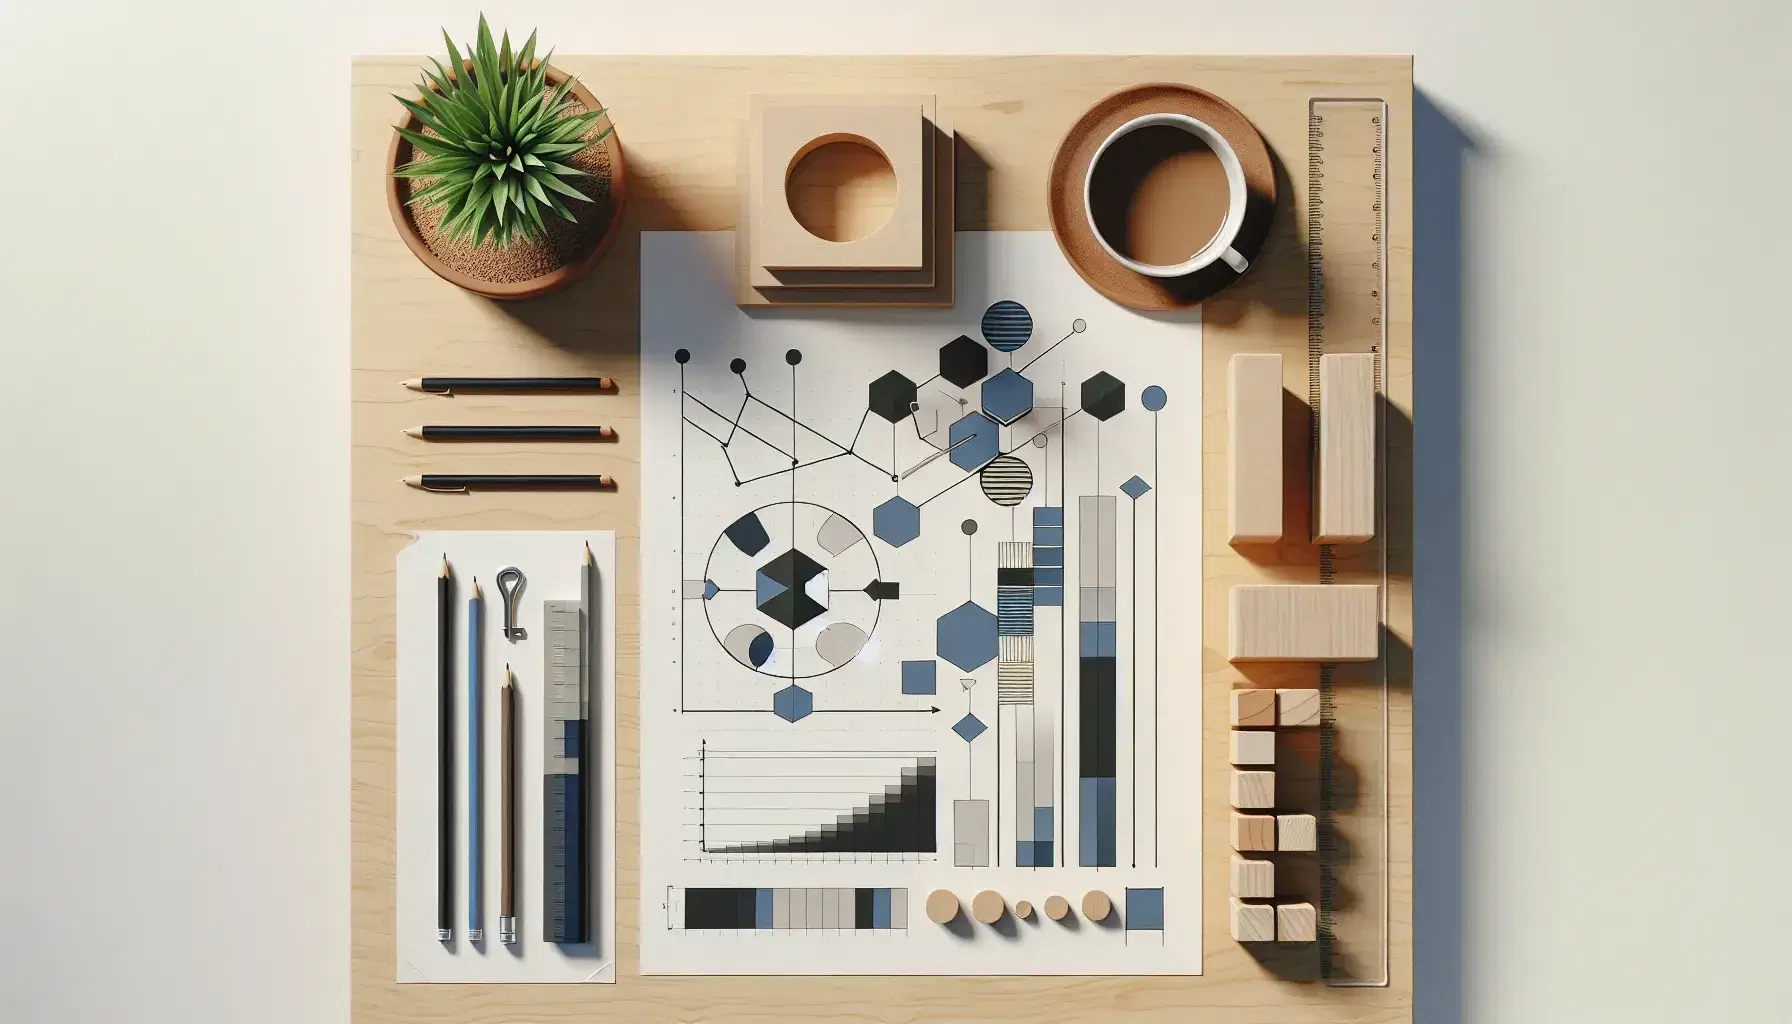 Espacio de trabajo con gráfico de Gantt, bloques de madera en forma de gráfico de barras, planta, taza de café y portabolígrafos en escritorio de madera.